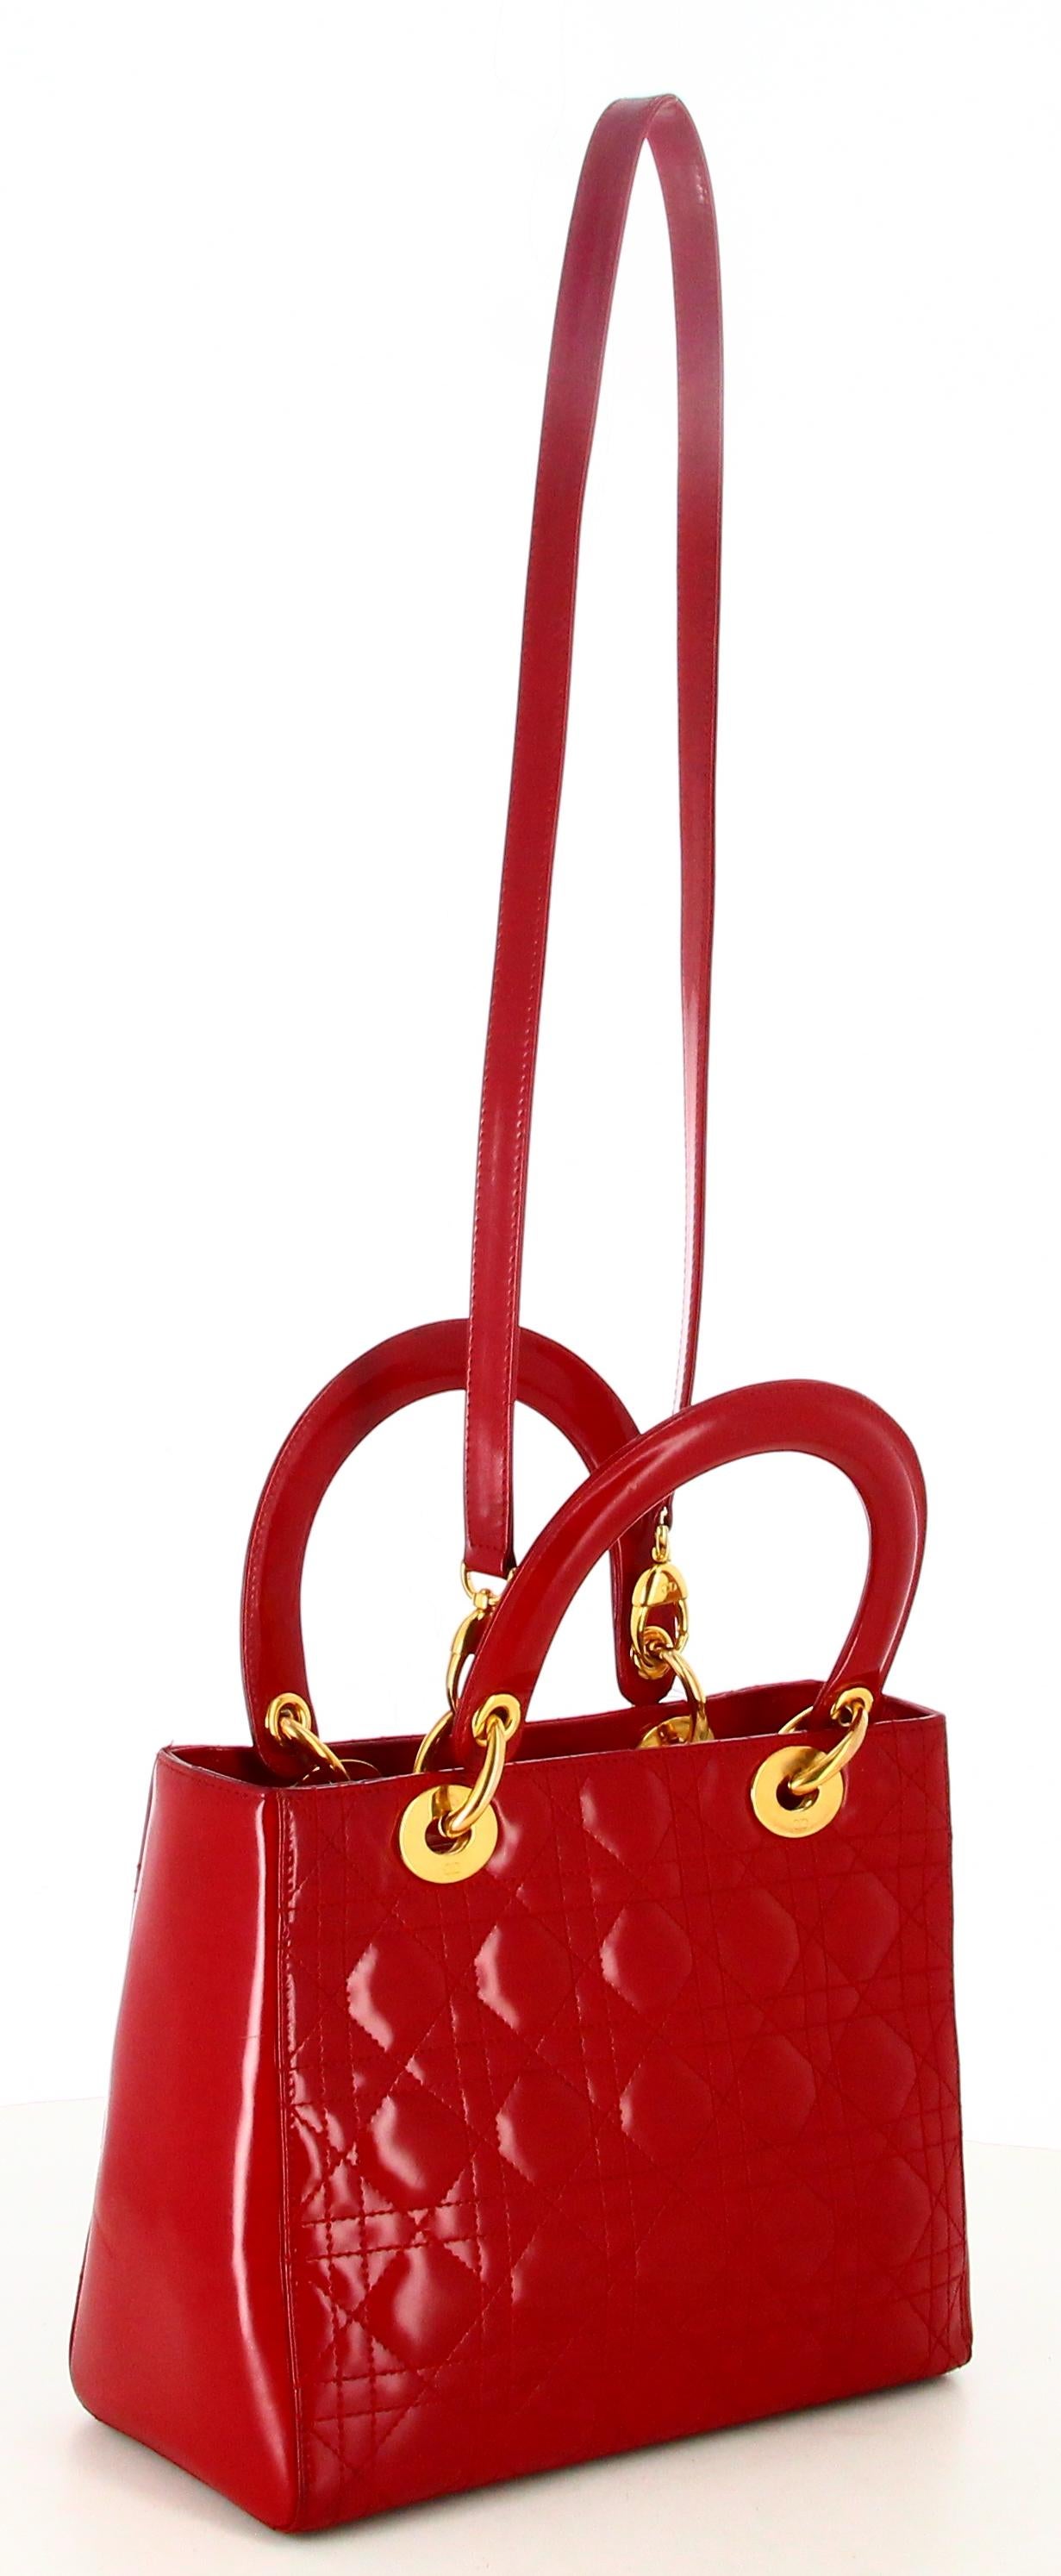 Lady Dior Medium Cannage Handbag For Sale 1